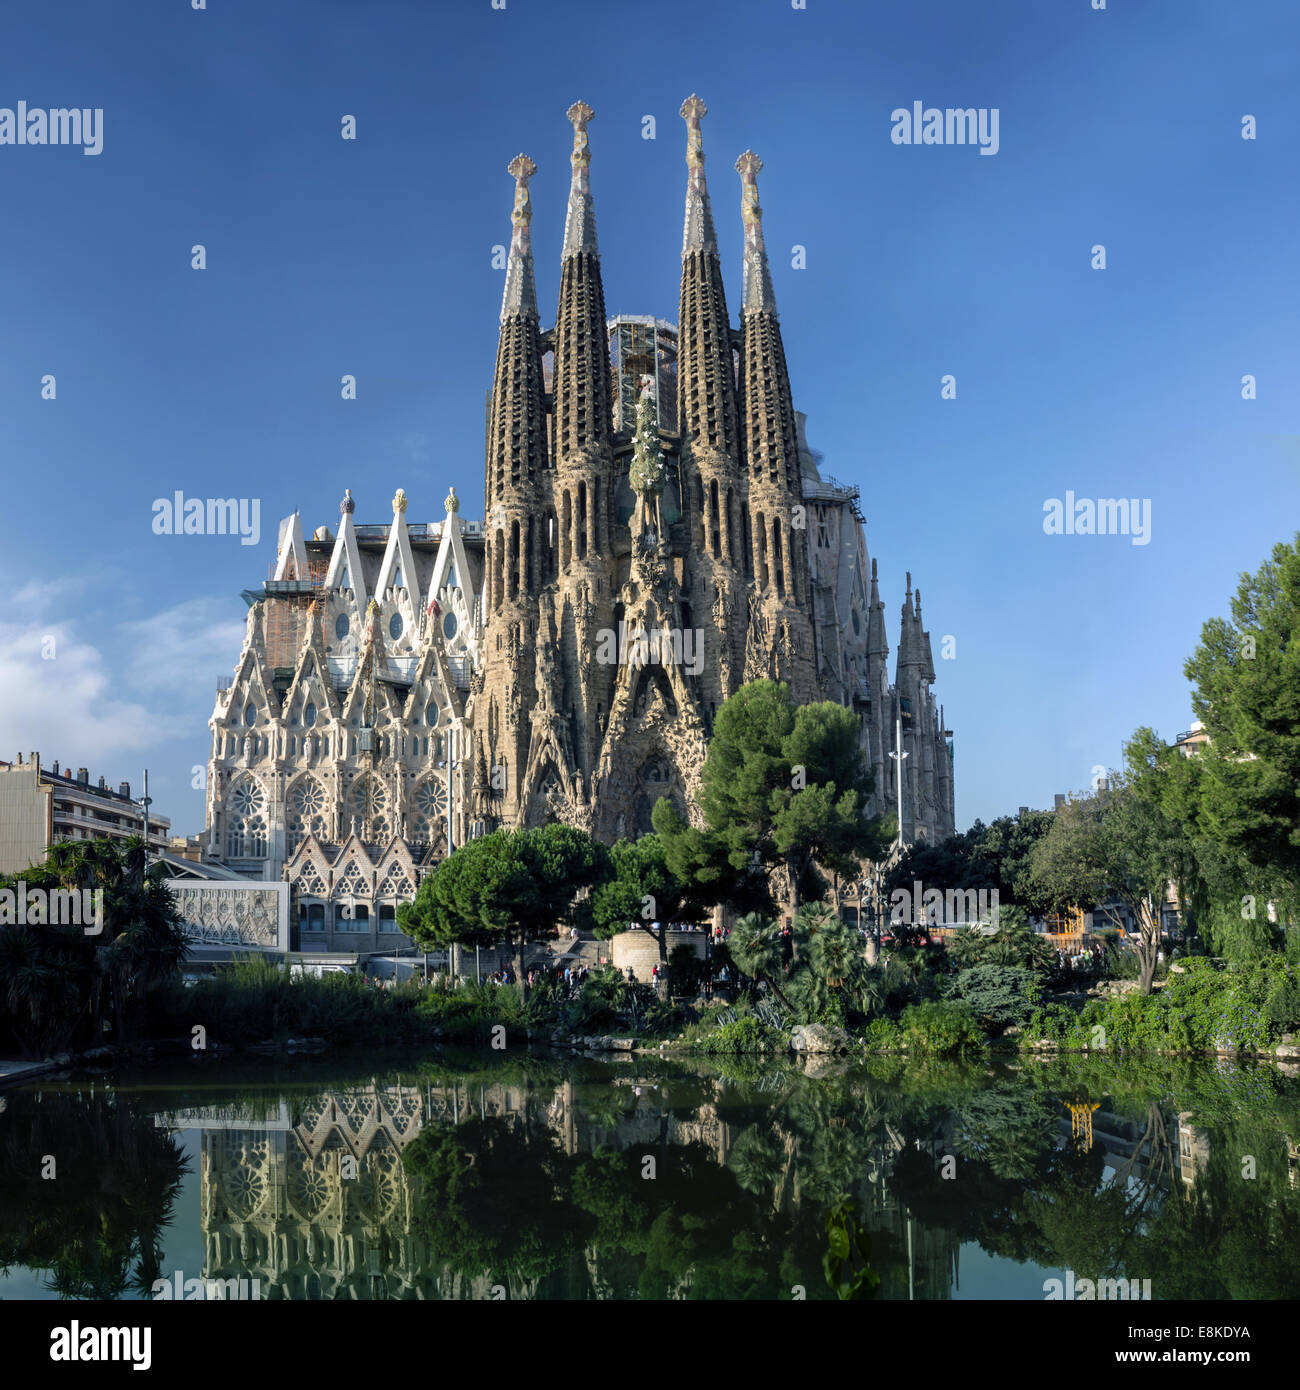 Barcellona, Spagna - 8 ottobre: La Sagrada Familia - cattedrale progettata da Antonio Gaudi, vista dalla più antica facciata a morni Foto Stock